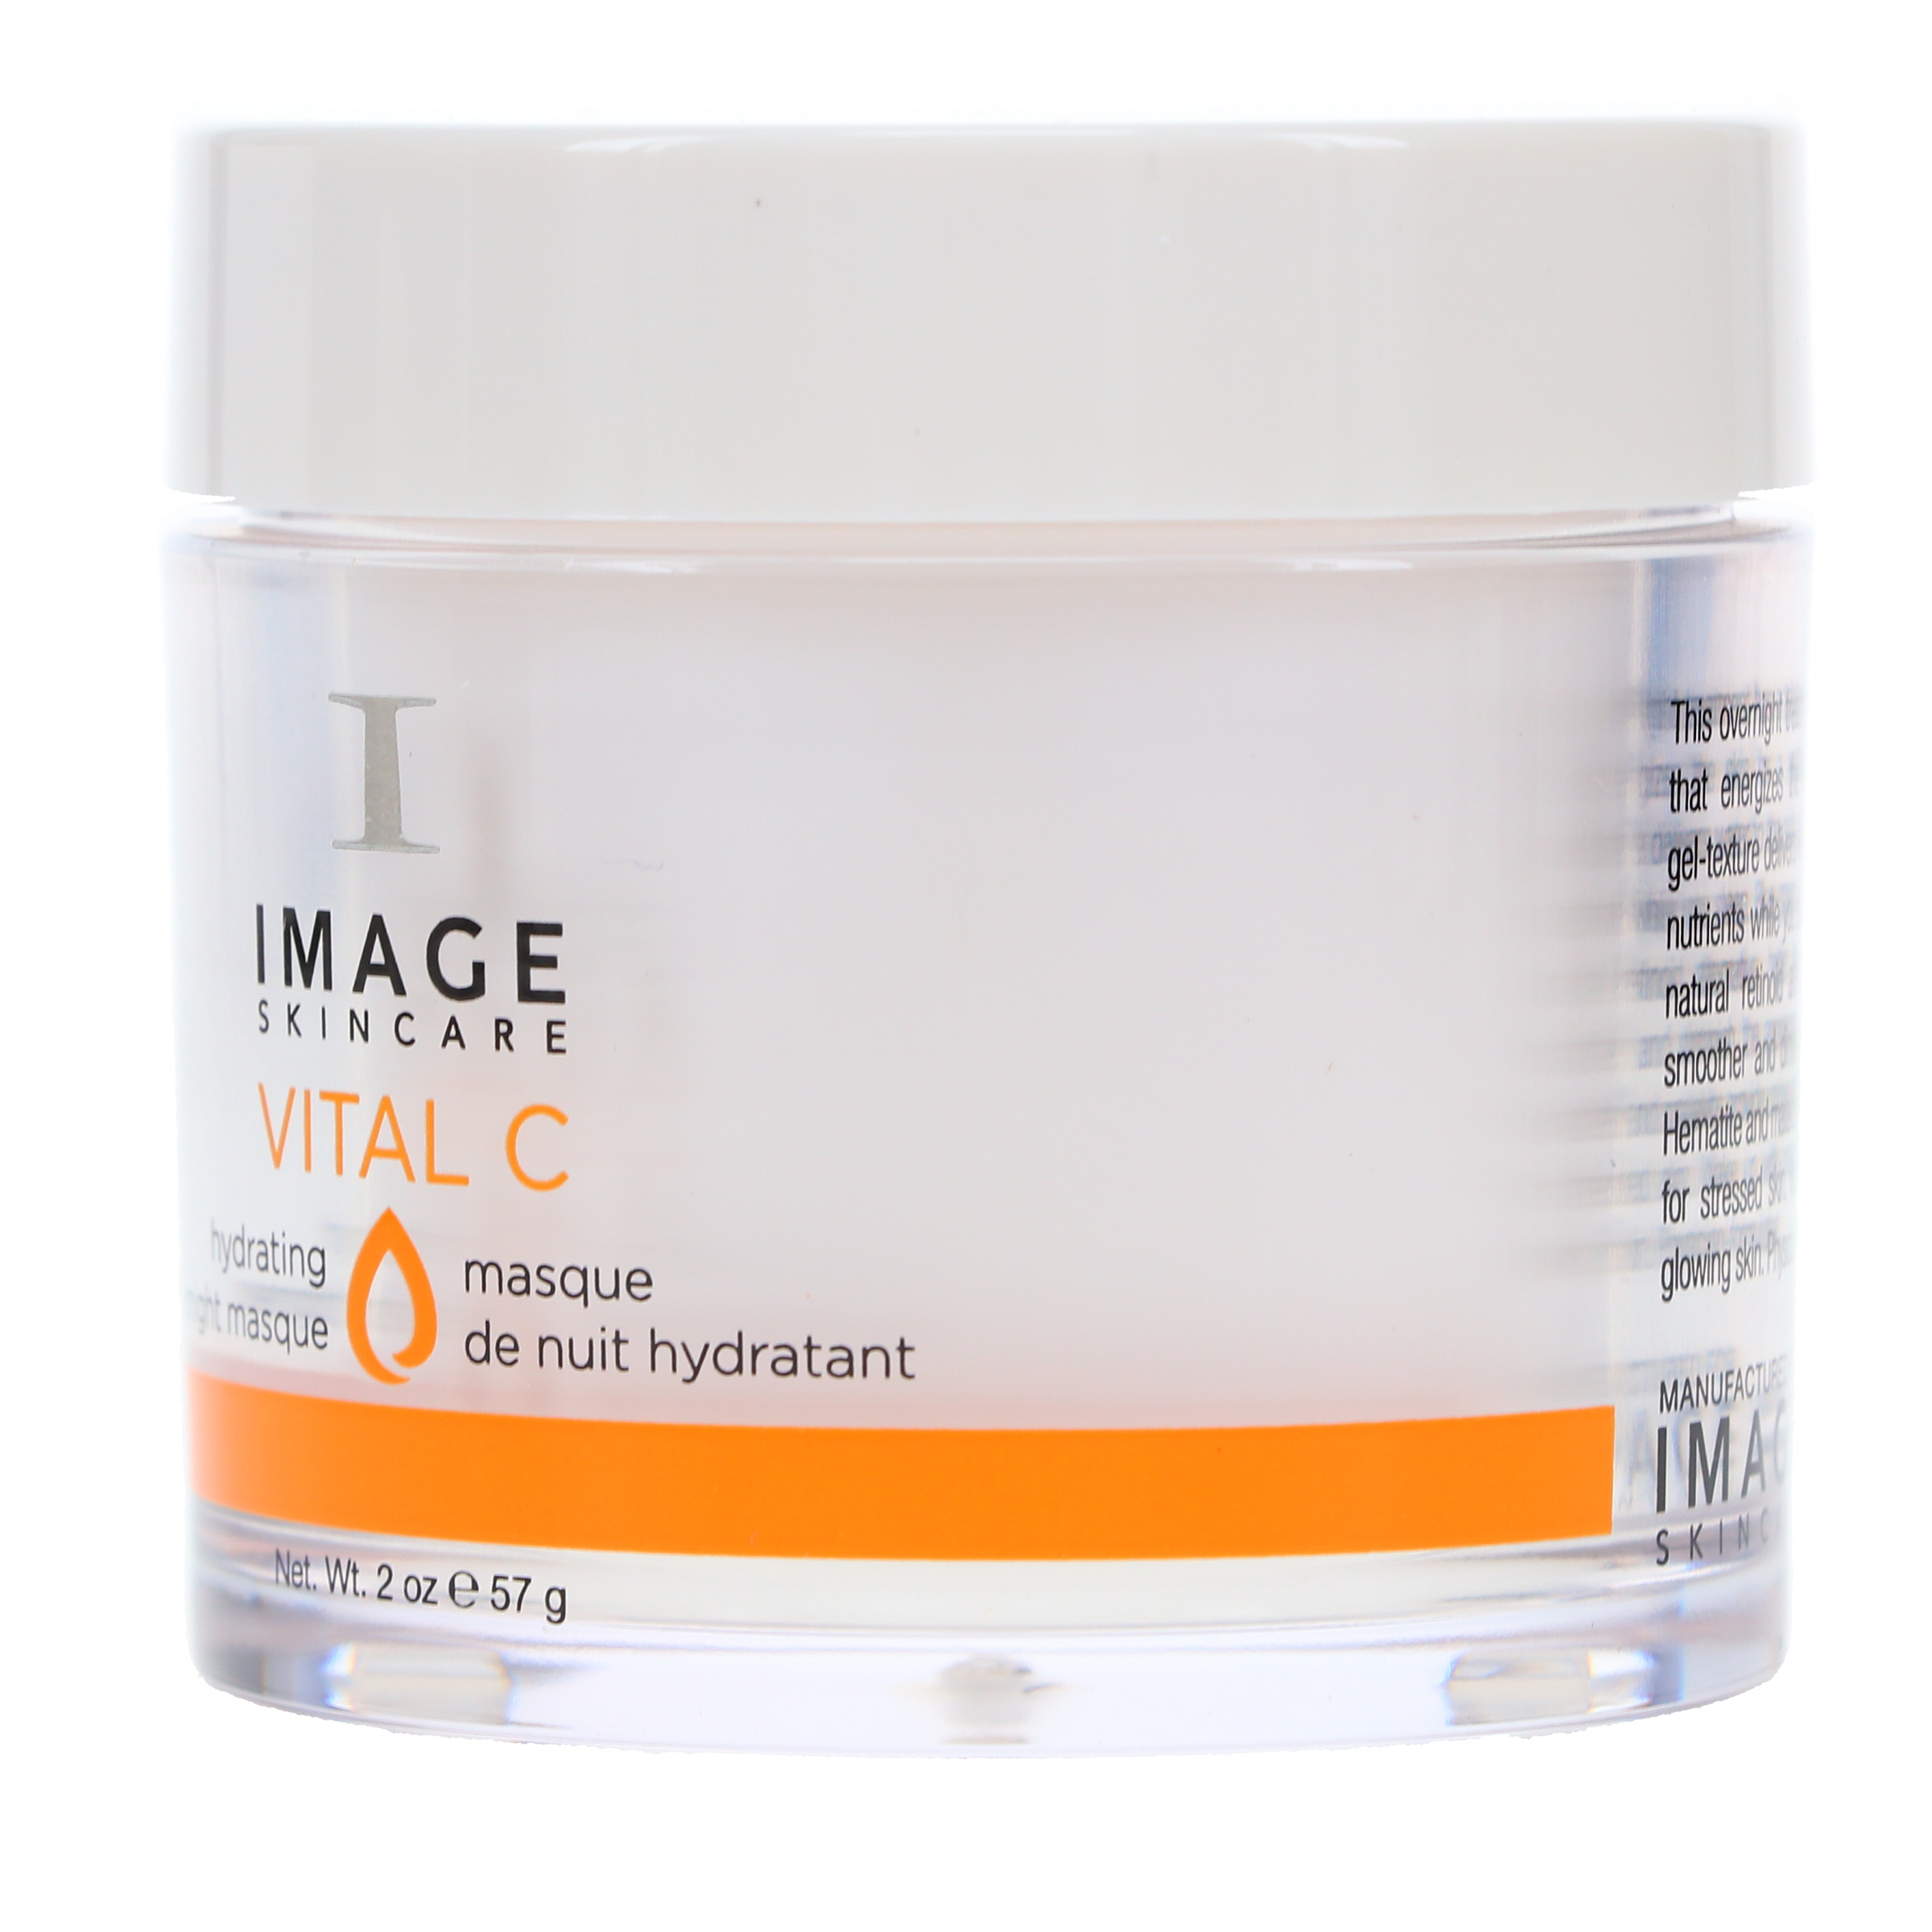 IMAGE Skincare Vital C Hydrating Overnight Masque 2 oz - image 2 of 8